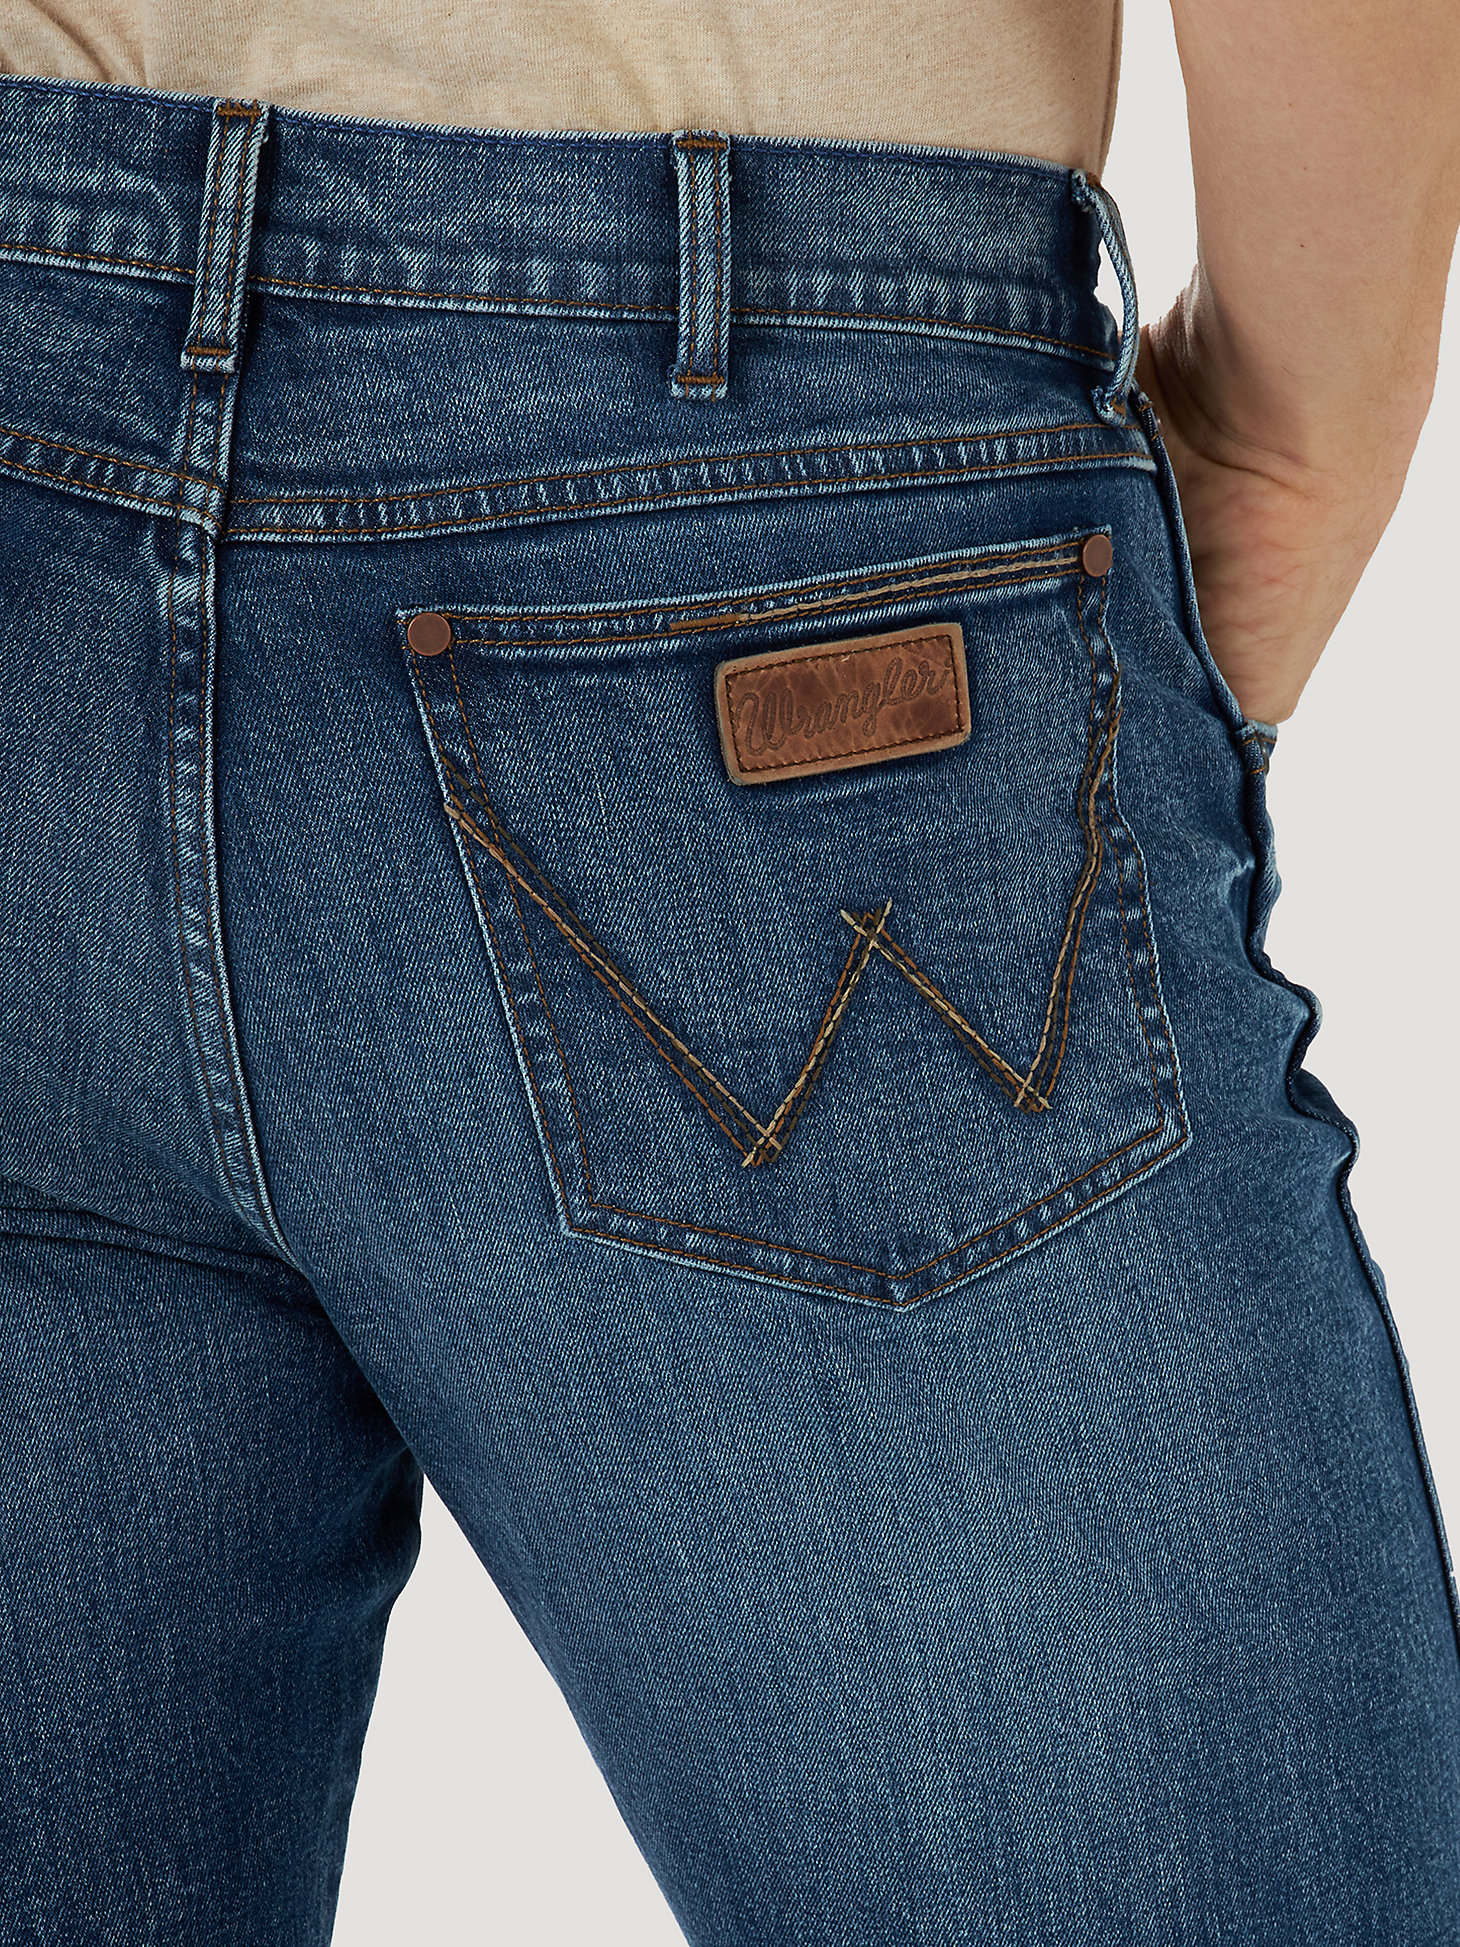 Men's Wrangler Retro® Slim Fit Bootcut Jean in Mile Post alternative view 3